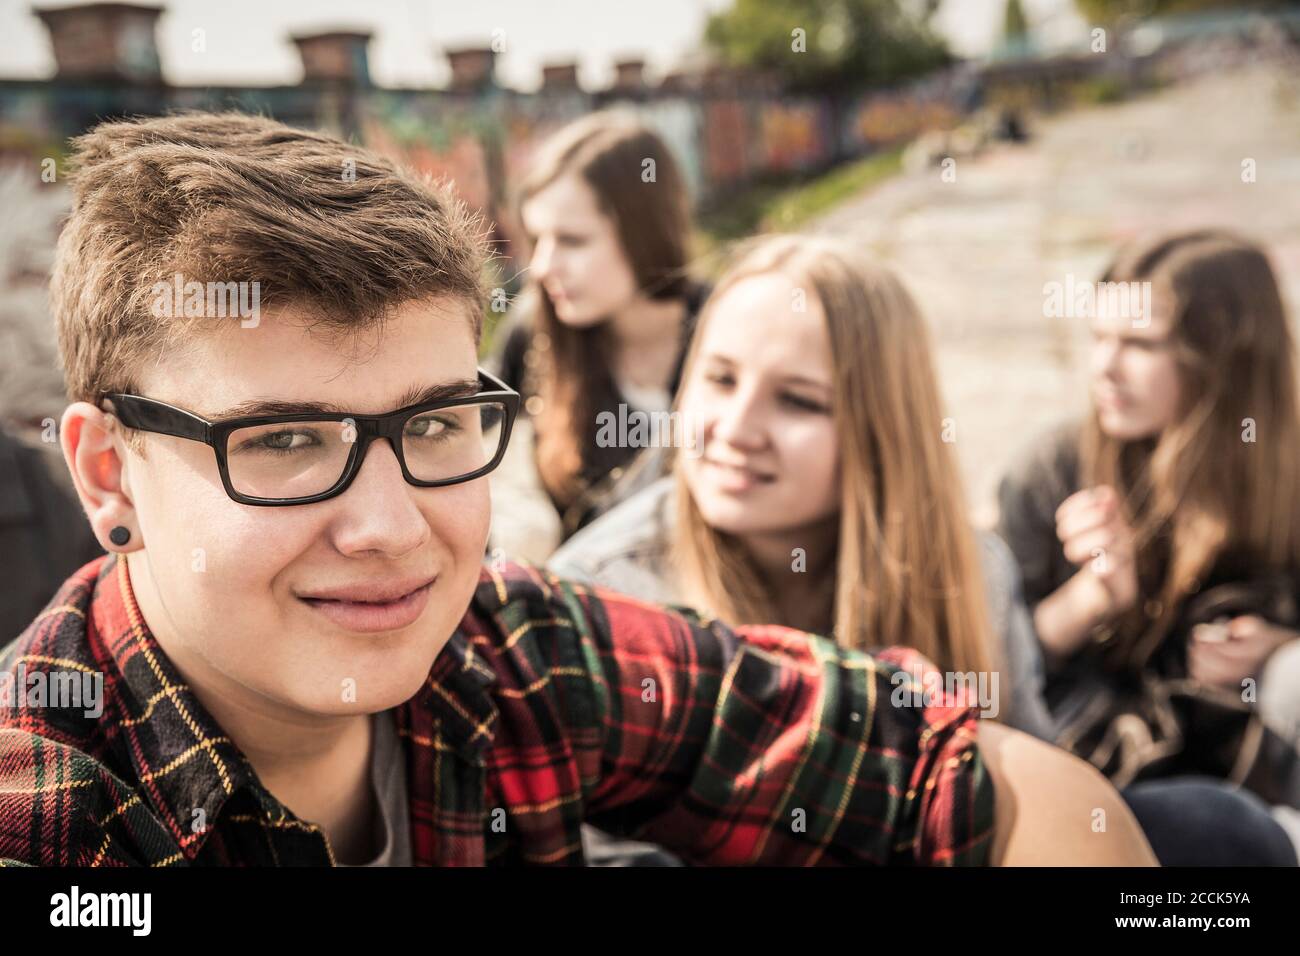 Ritratto di un adolescente sorridente che si agganava con gli amici in un vecchia zona industriale Foto Stock